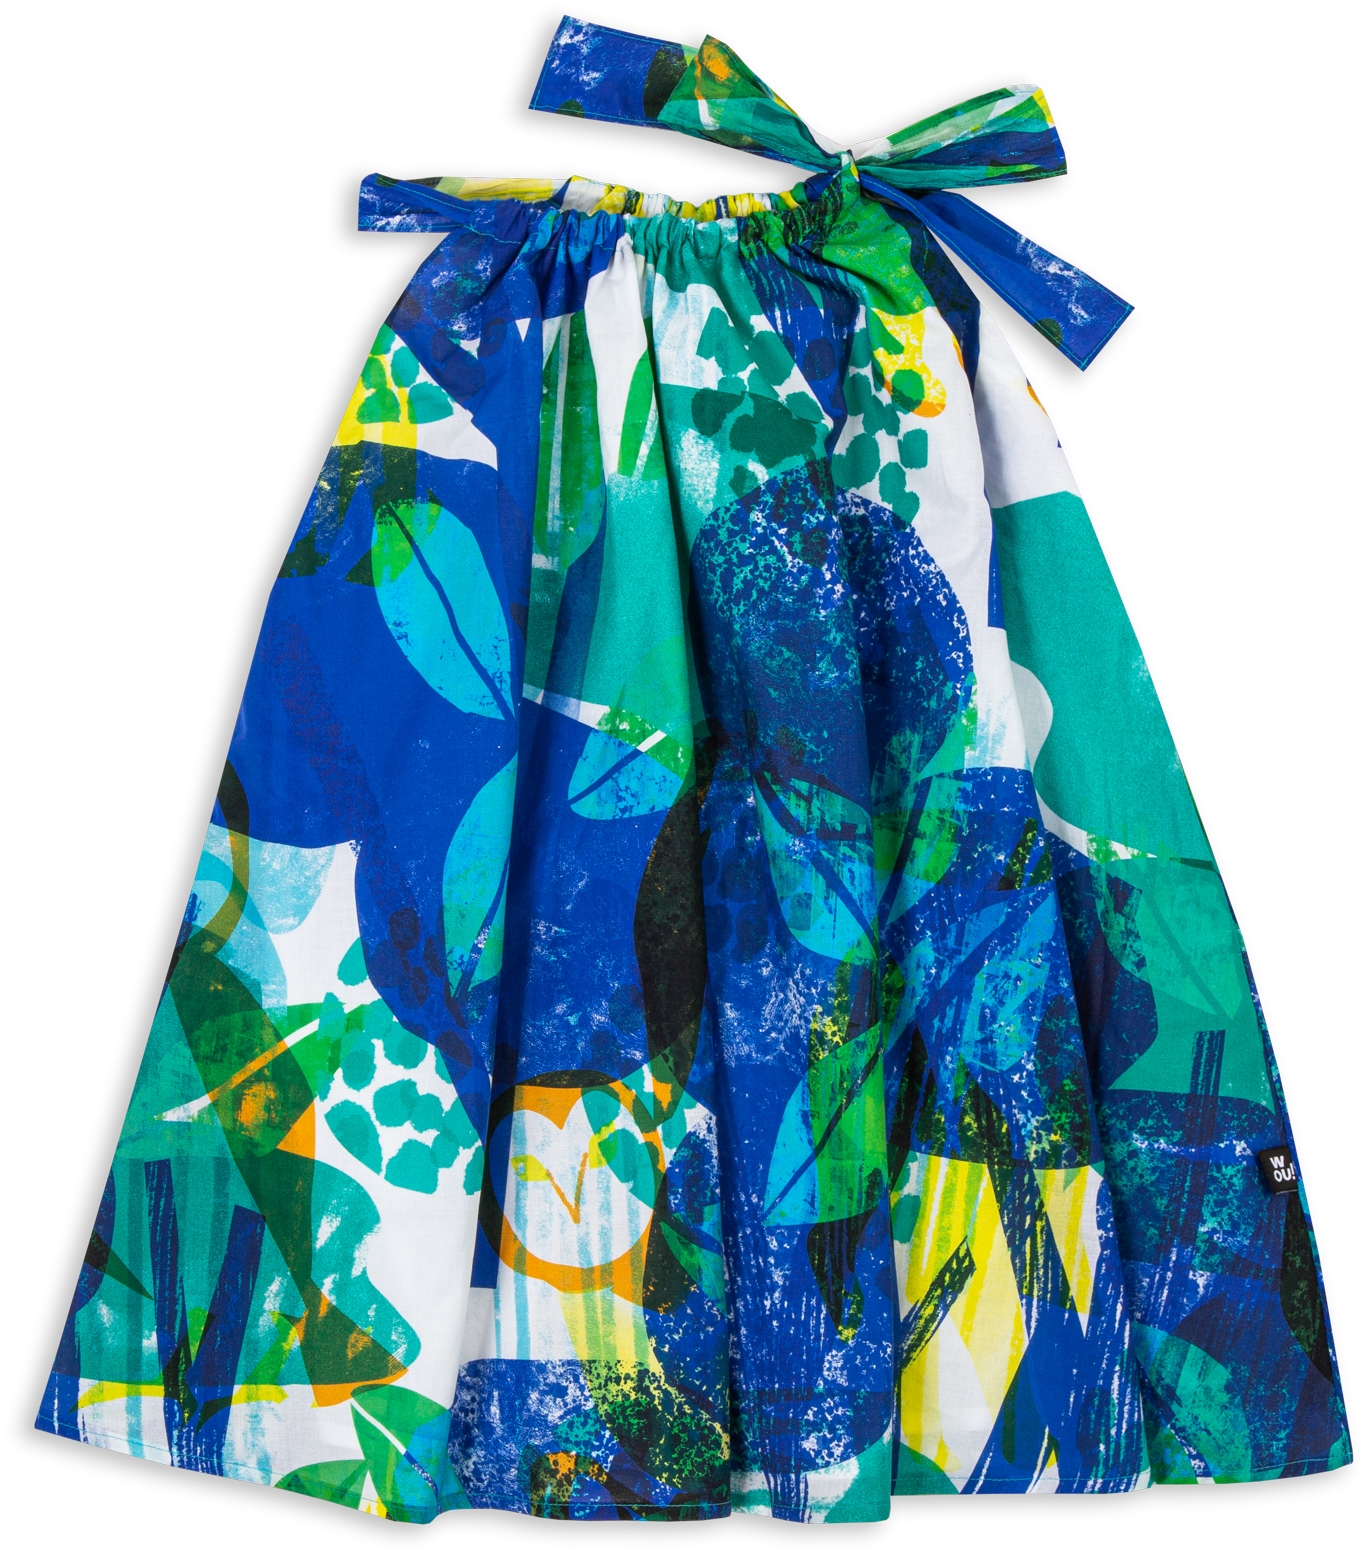 Dívčí šaty Wouki Komori - blue forest 110